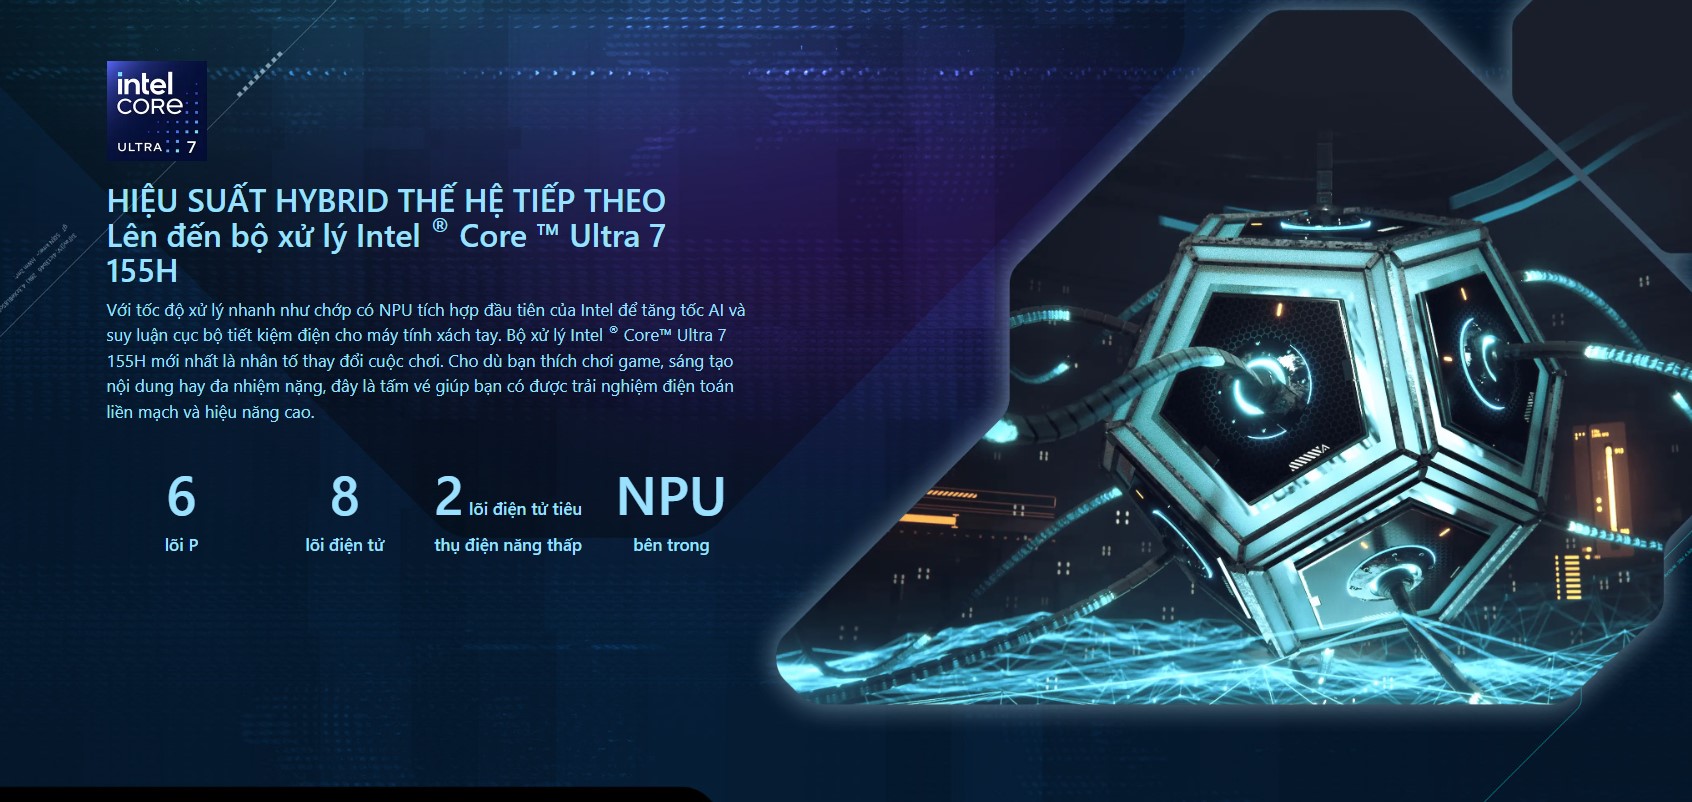 HIỆU SUẤT HYBRID THẾ HỆ TIẾP THEO Lên tới bộ xử lý Intel® Core™ Ultra 7 155H